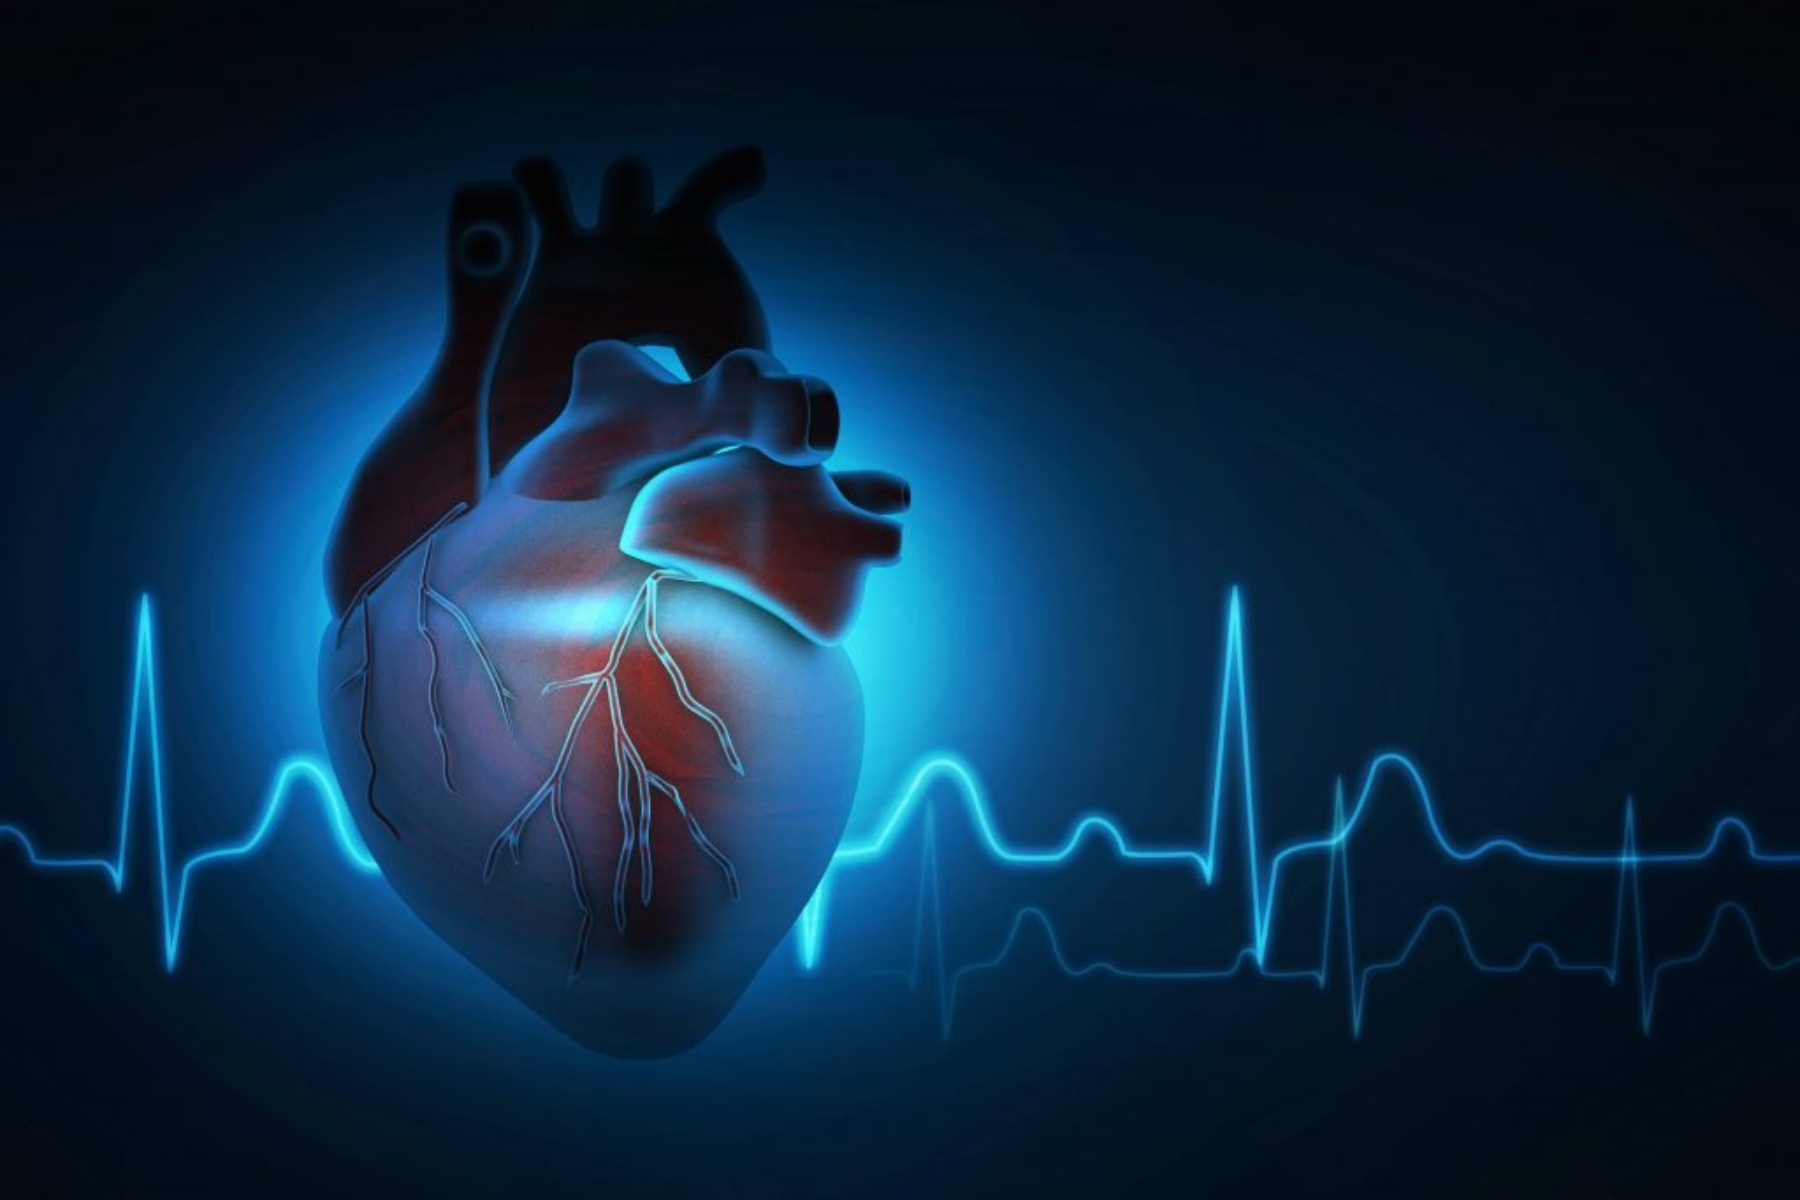 Μαγνητική τομογραφία: Απεικονίζει τον μεταβολισμό της καρδιάς σε πραγματικό χρόνο